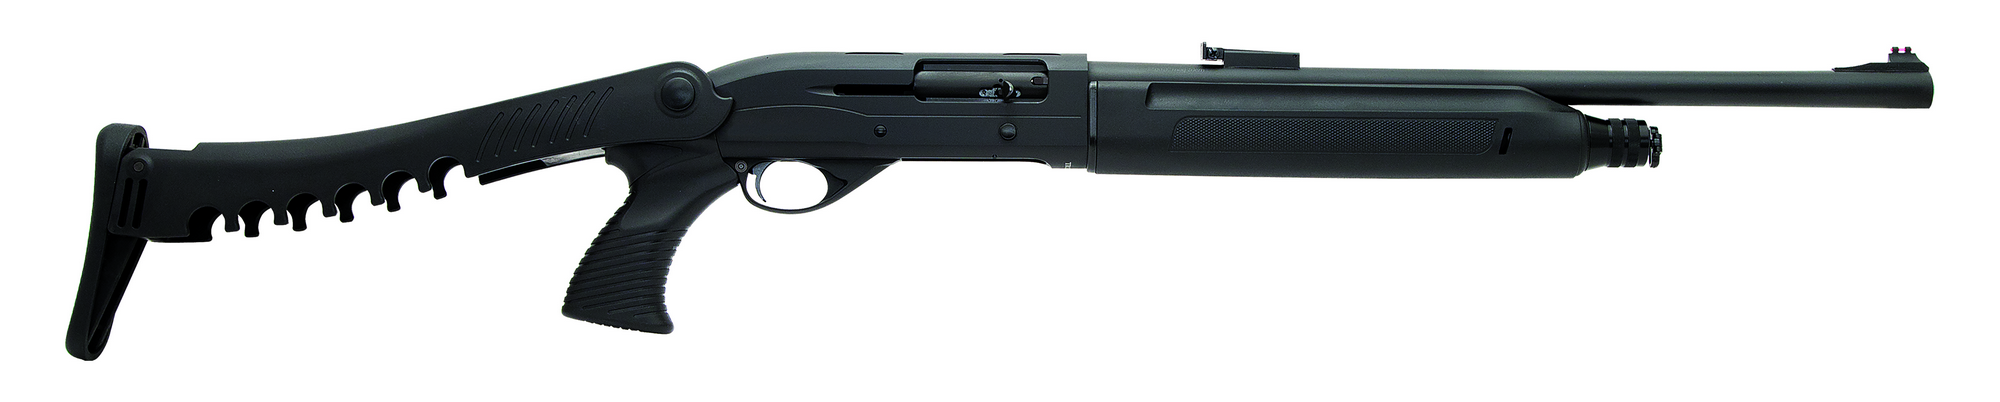 Sulun Arms Sg-321.